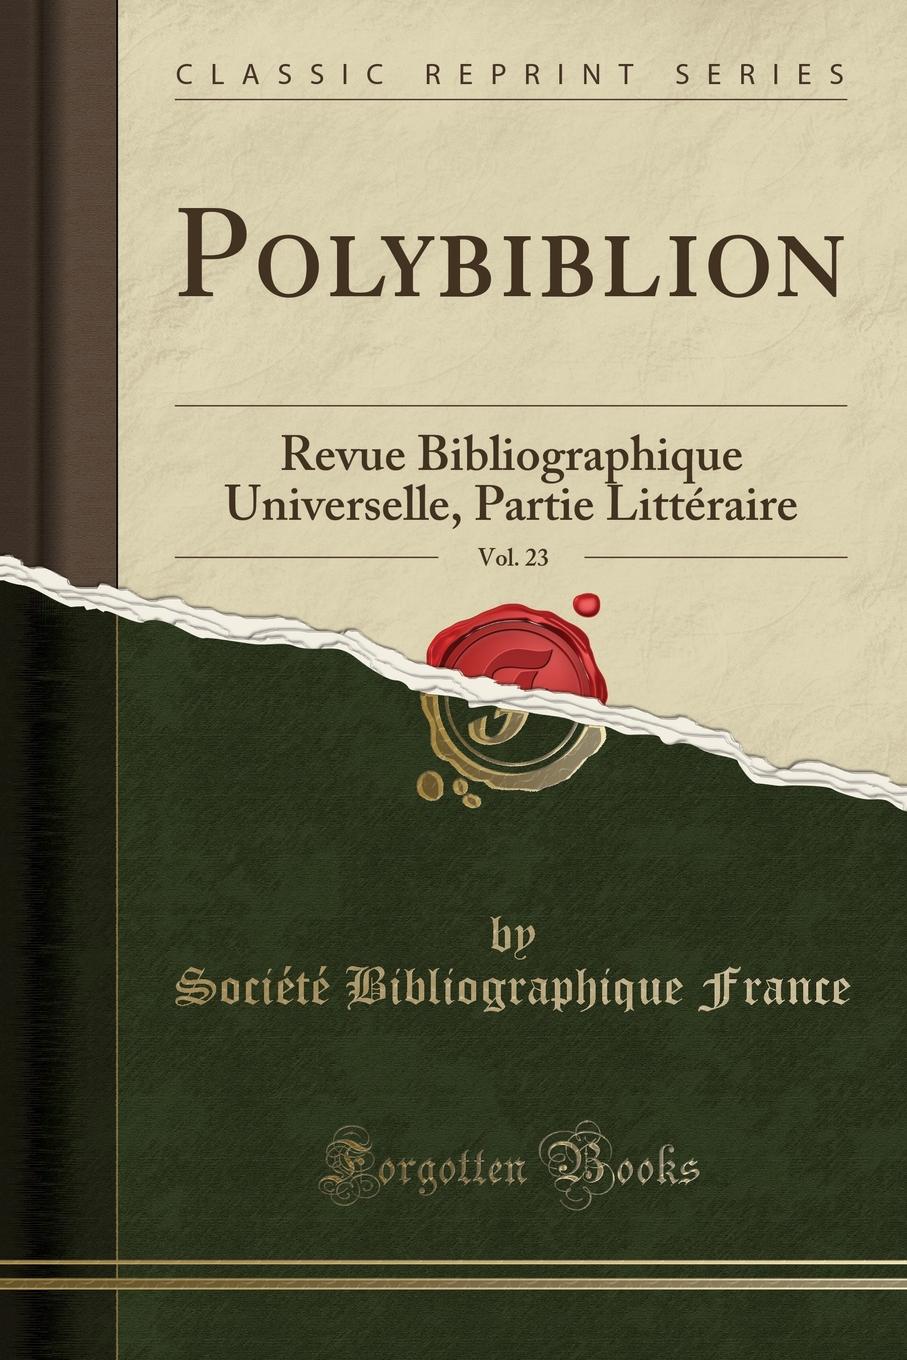 Société Bibliographique France Polybiblion, Vol. 23. Revue Bibliographique Universelle, Partie Litteraire (Classic Reprint)